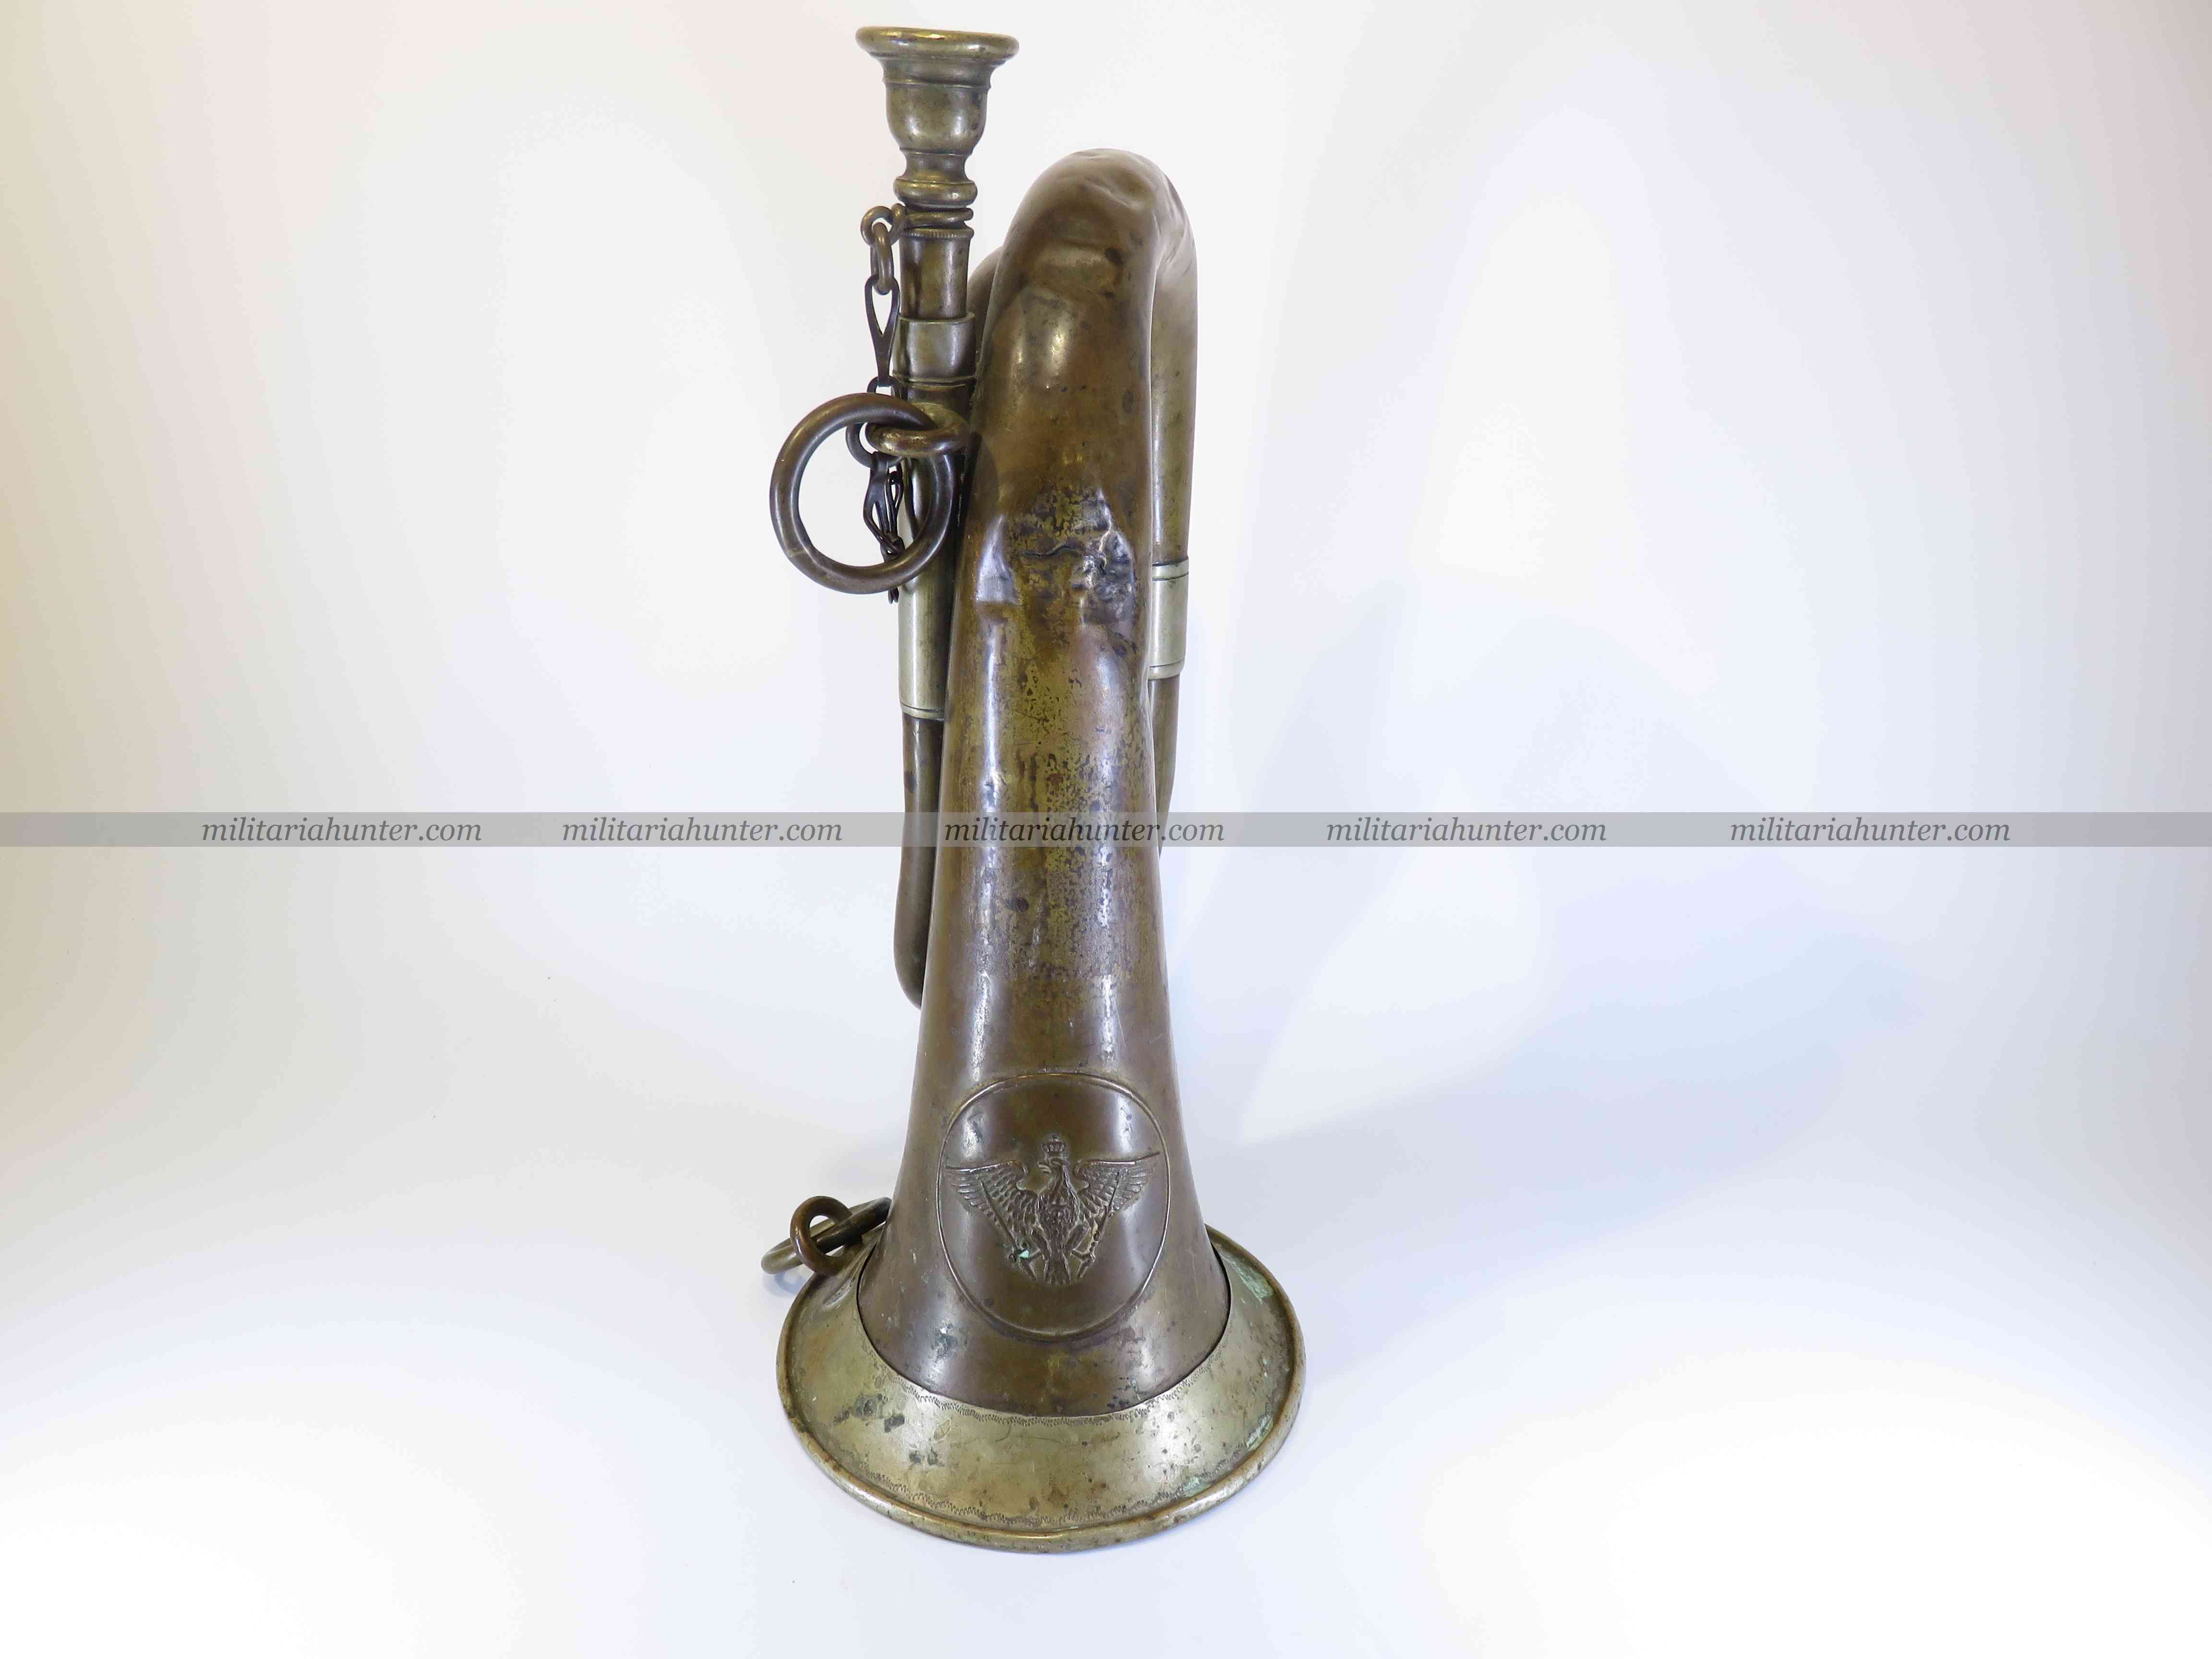 militaria : Signalhorn - bugle prussien - ww1 prussian bugle